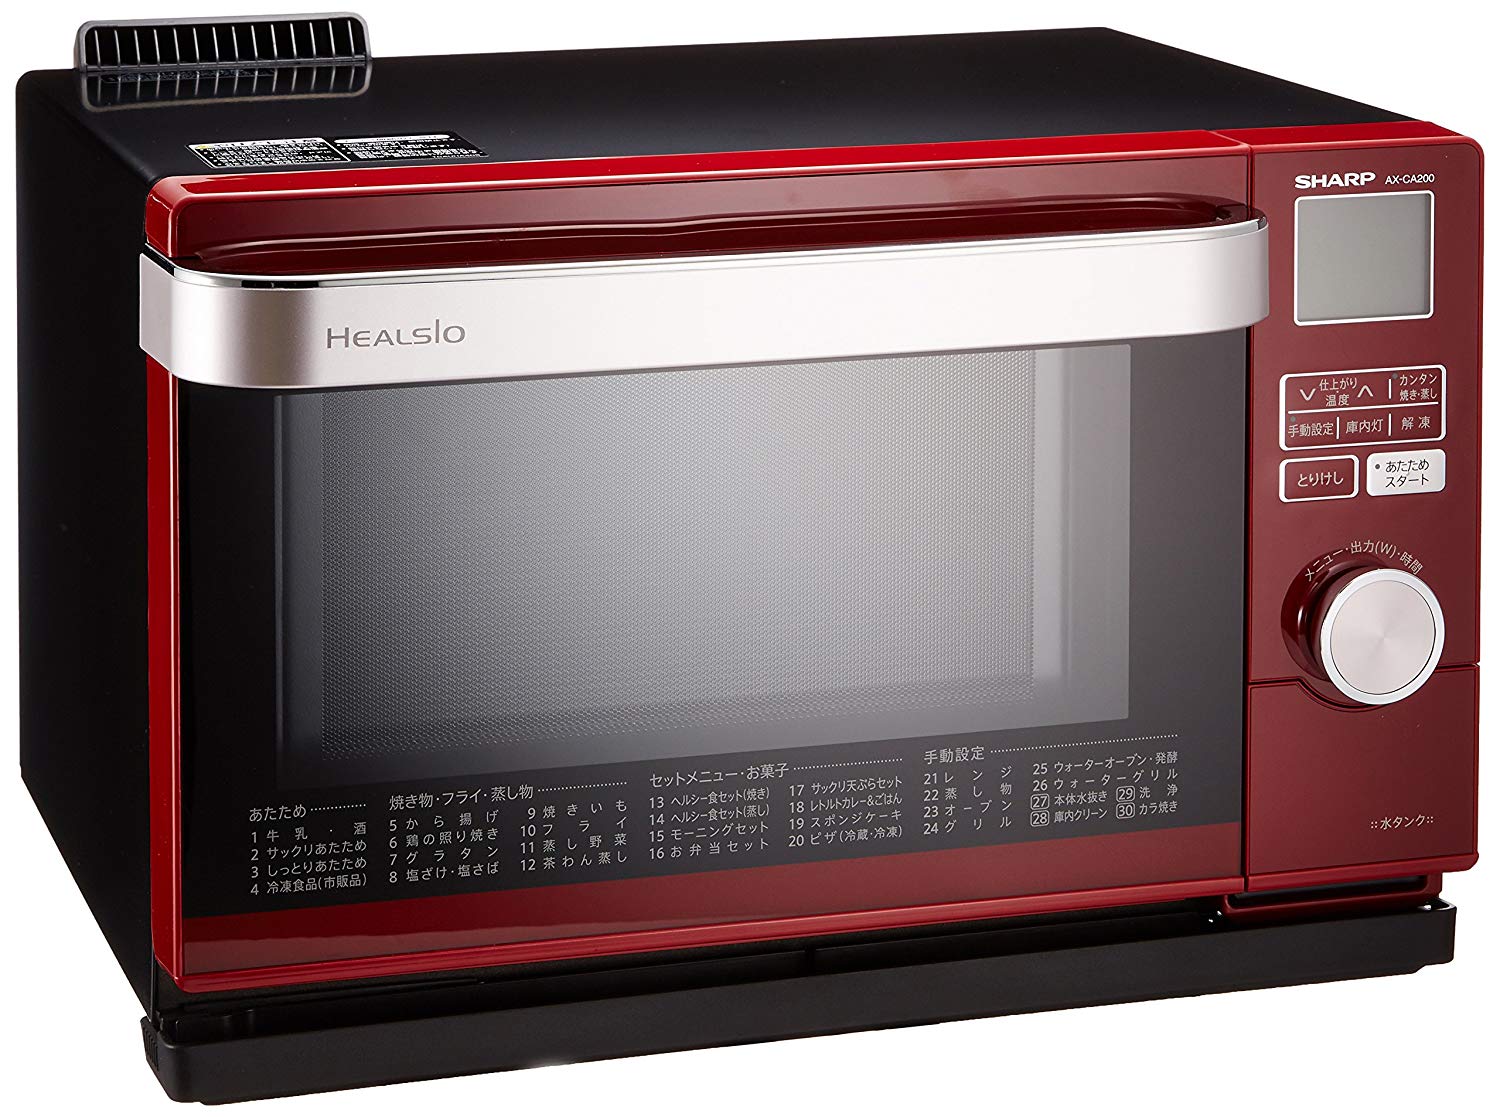 Sharp Water Oven Herushio (HEALSIO) 18L Red AX-CA200-R